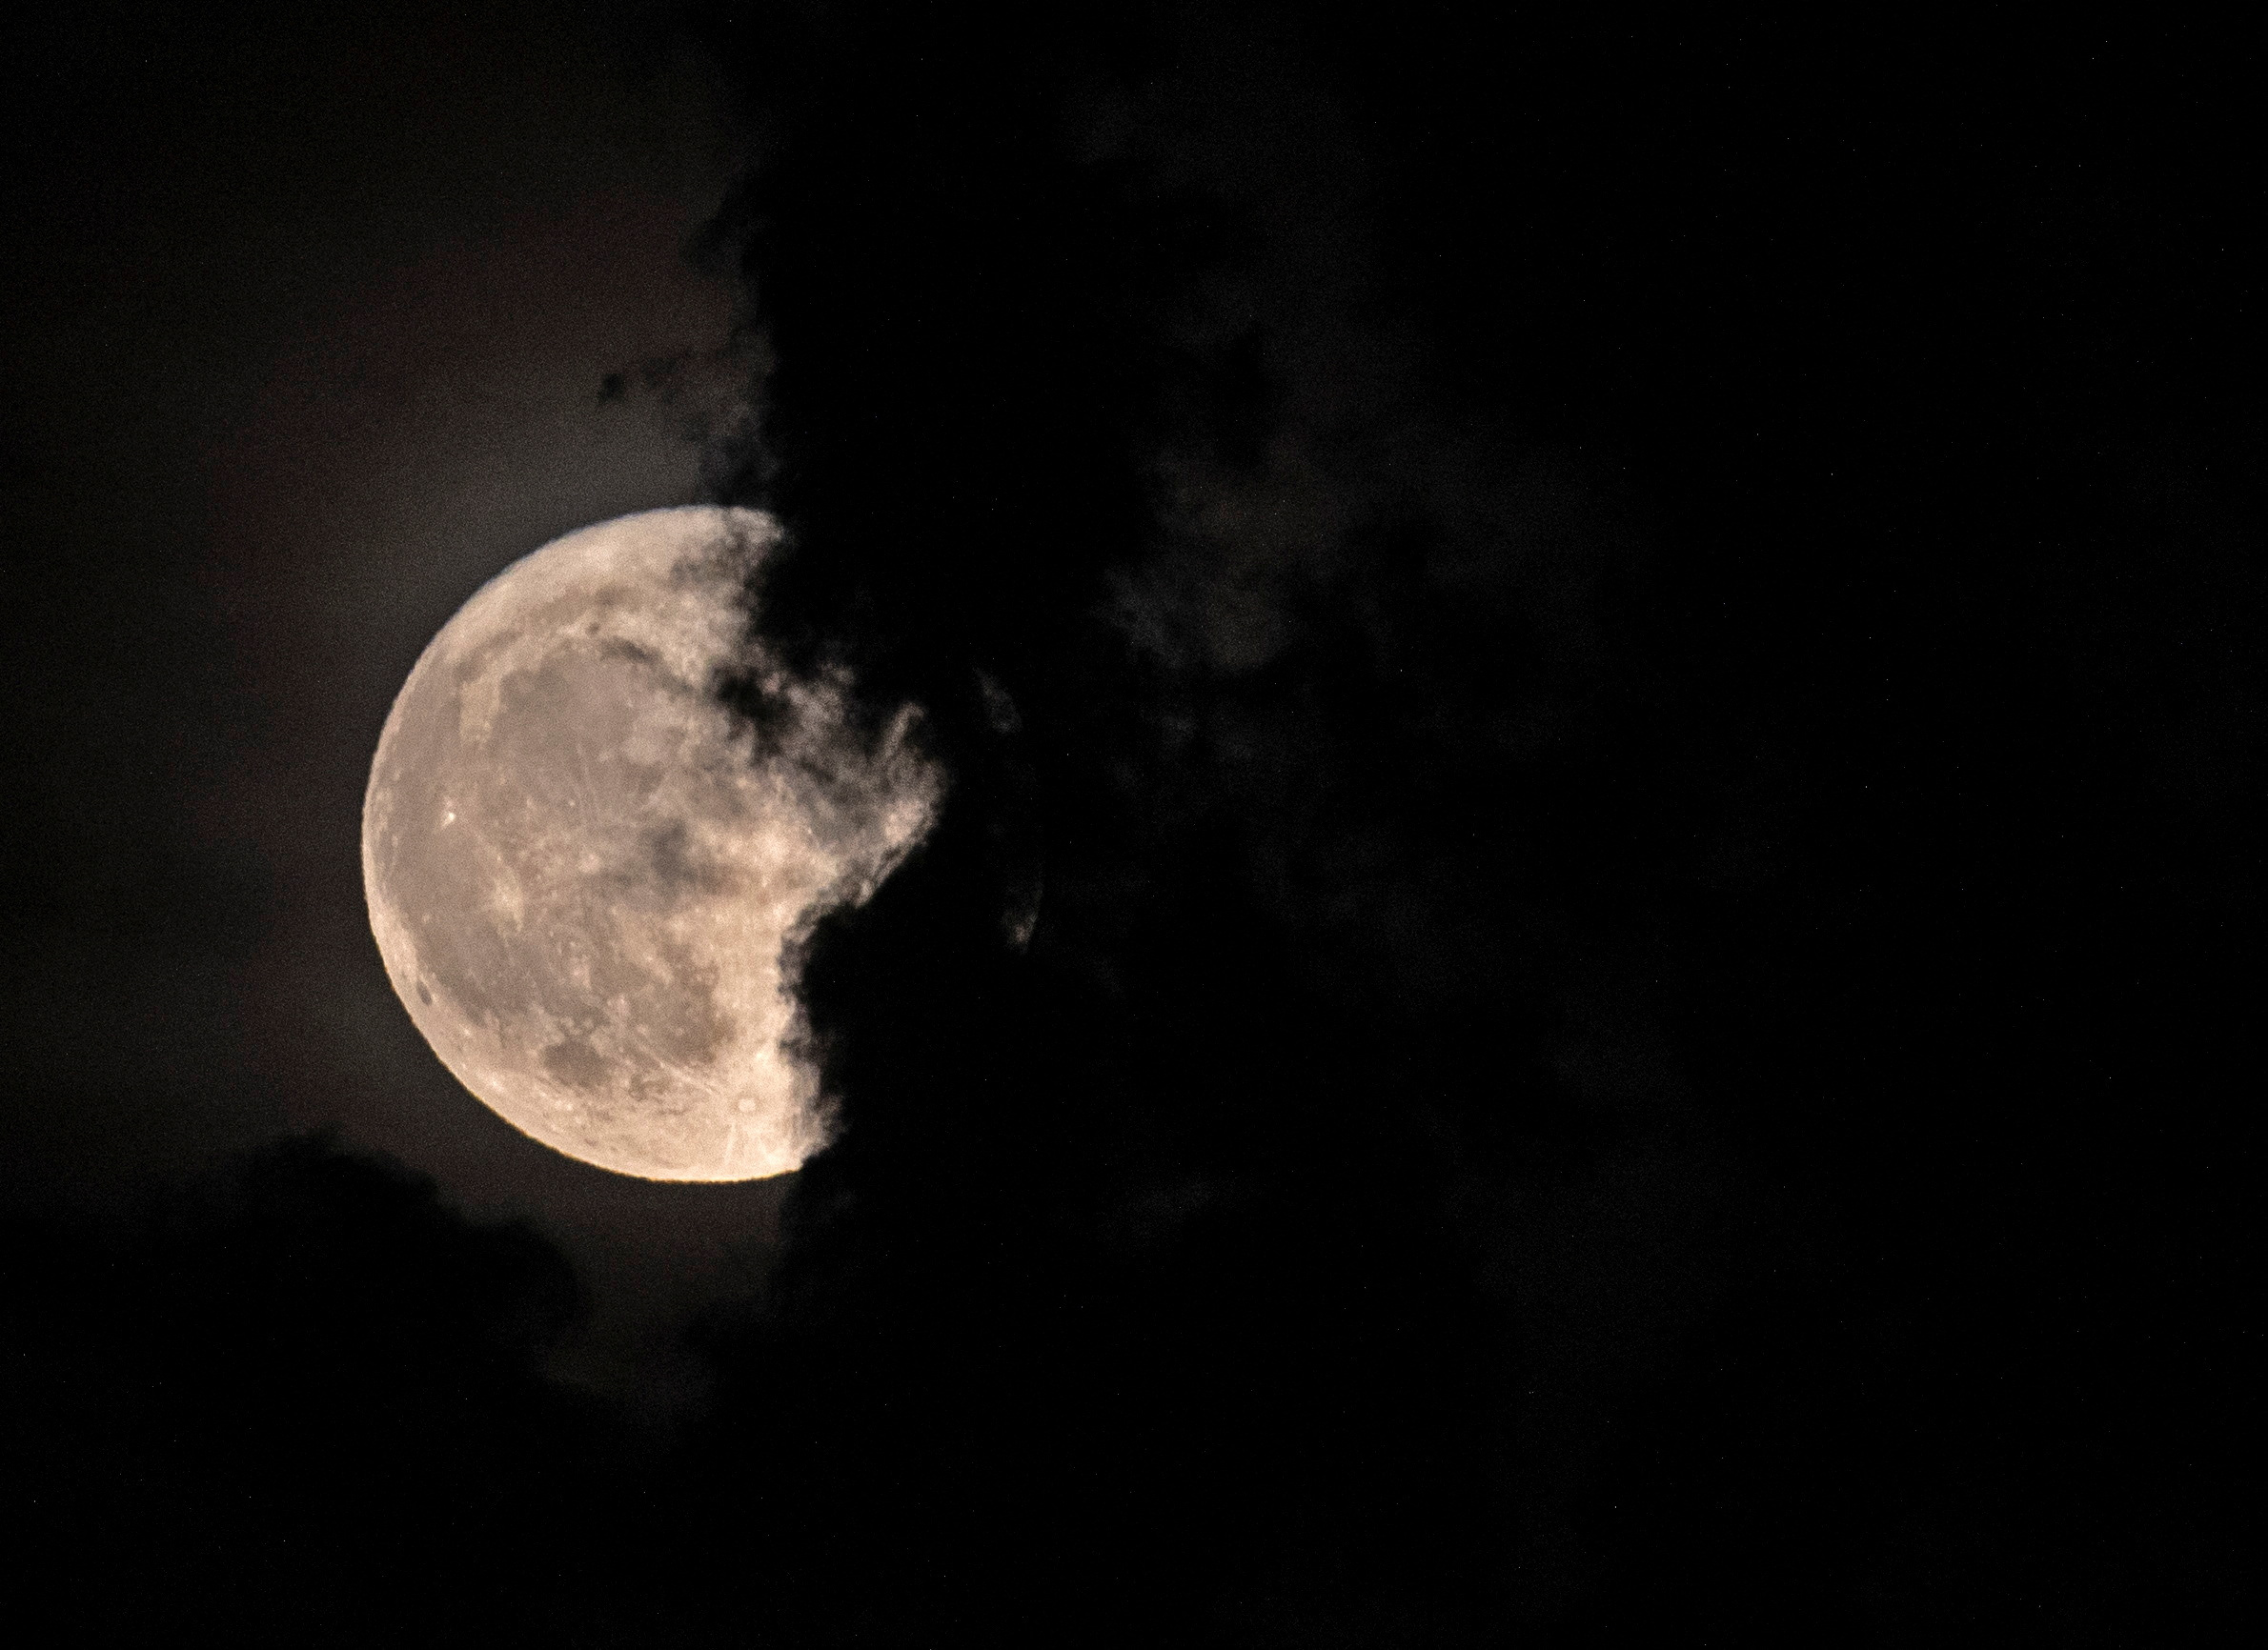 Вид на полную луну из Скопье, Македония
&nbsp;